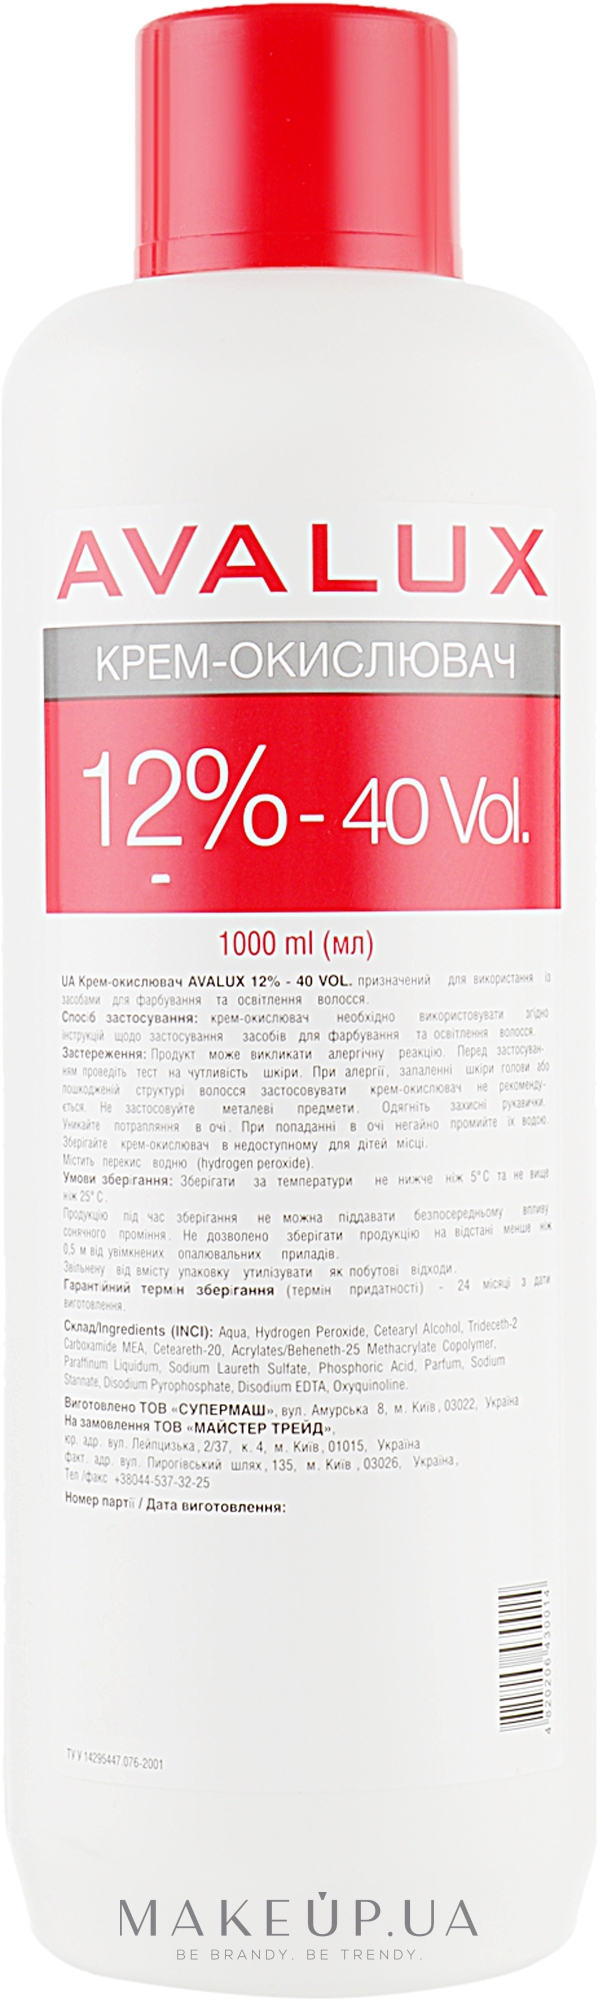 Крем-окислитель для волос - Avalux 12% 40vol — фото 1000ml